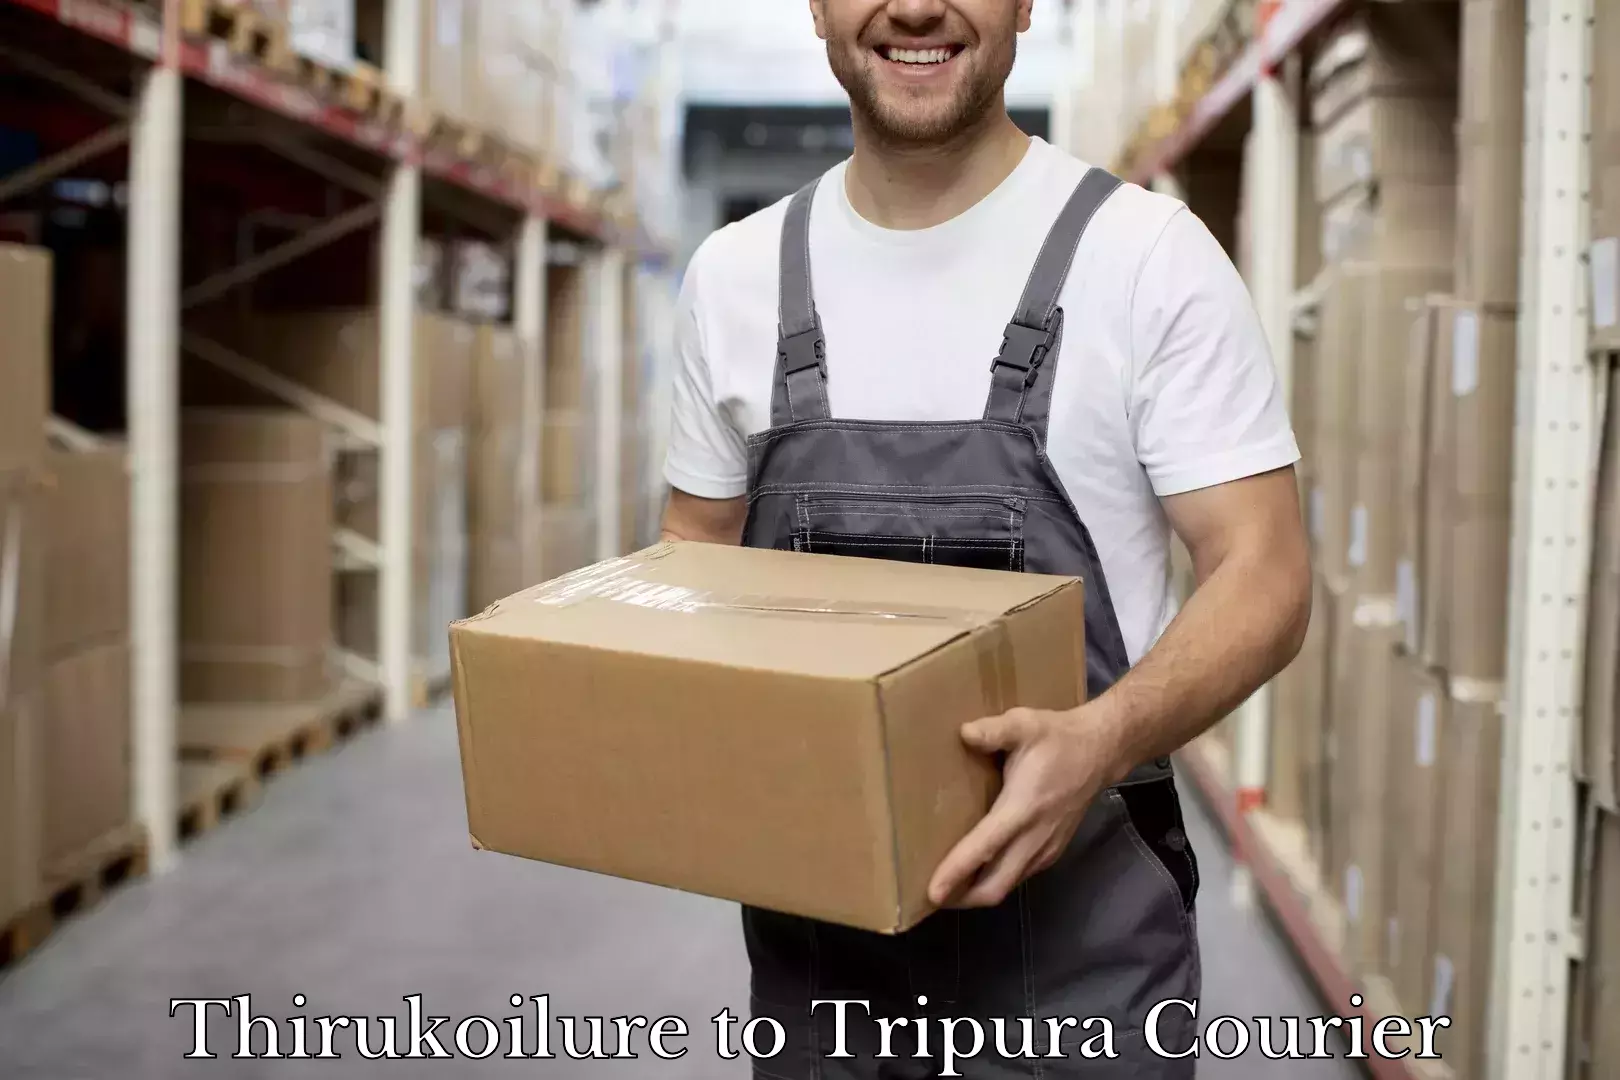 Door-to-door baggage service Thirukoilure to Tripura